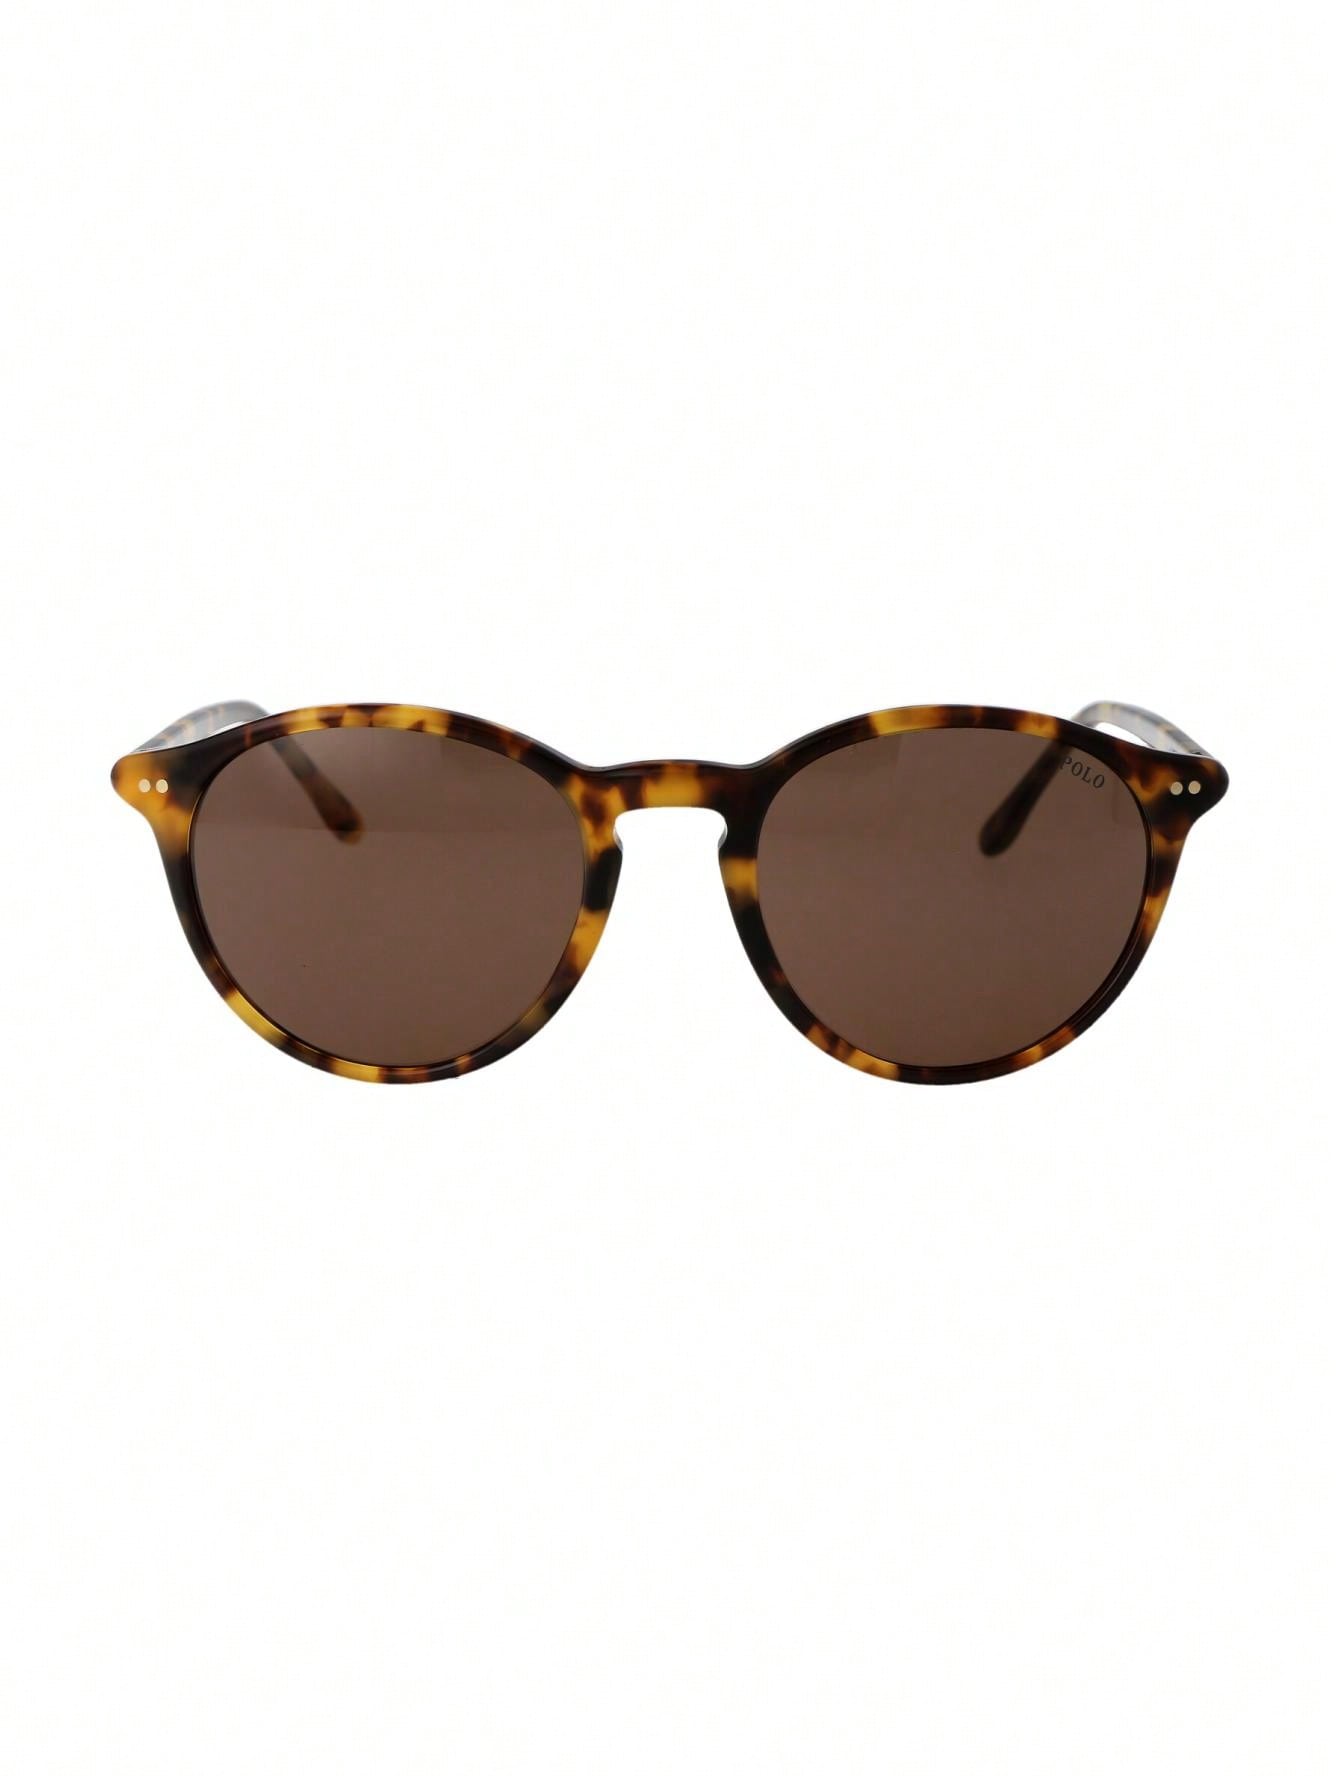 Мужские солнцезащитные очки Polo Ralph Lauren DECOR 0PH4193535273, многоцветный прямоугольные матовые черные серебряные зеркальные солнцезащитные очки polo ralph lauren черный